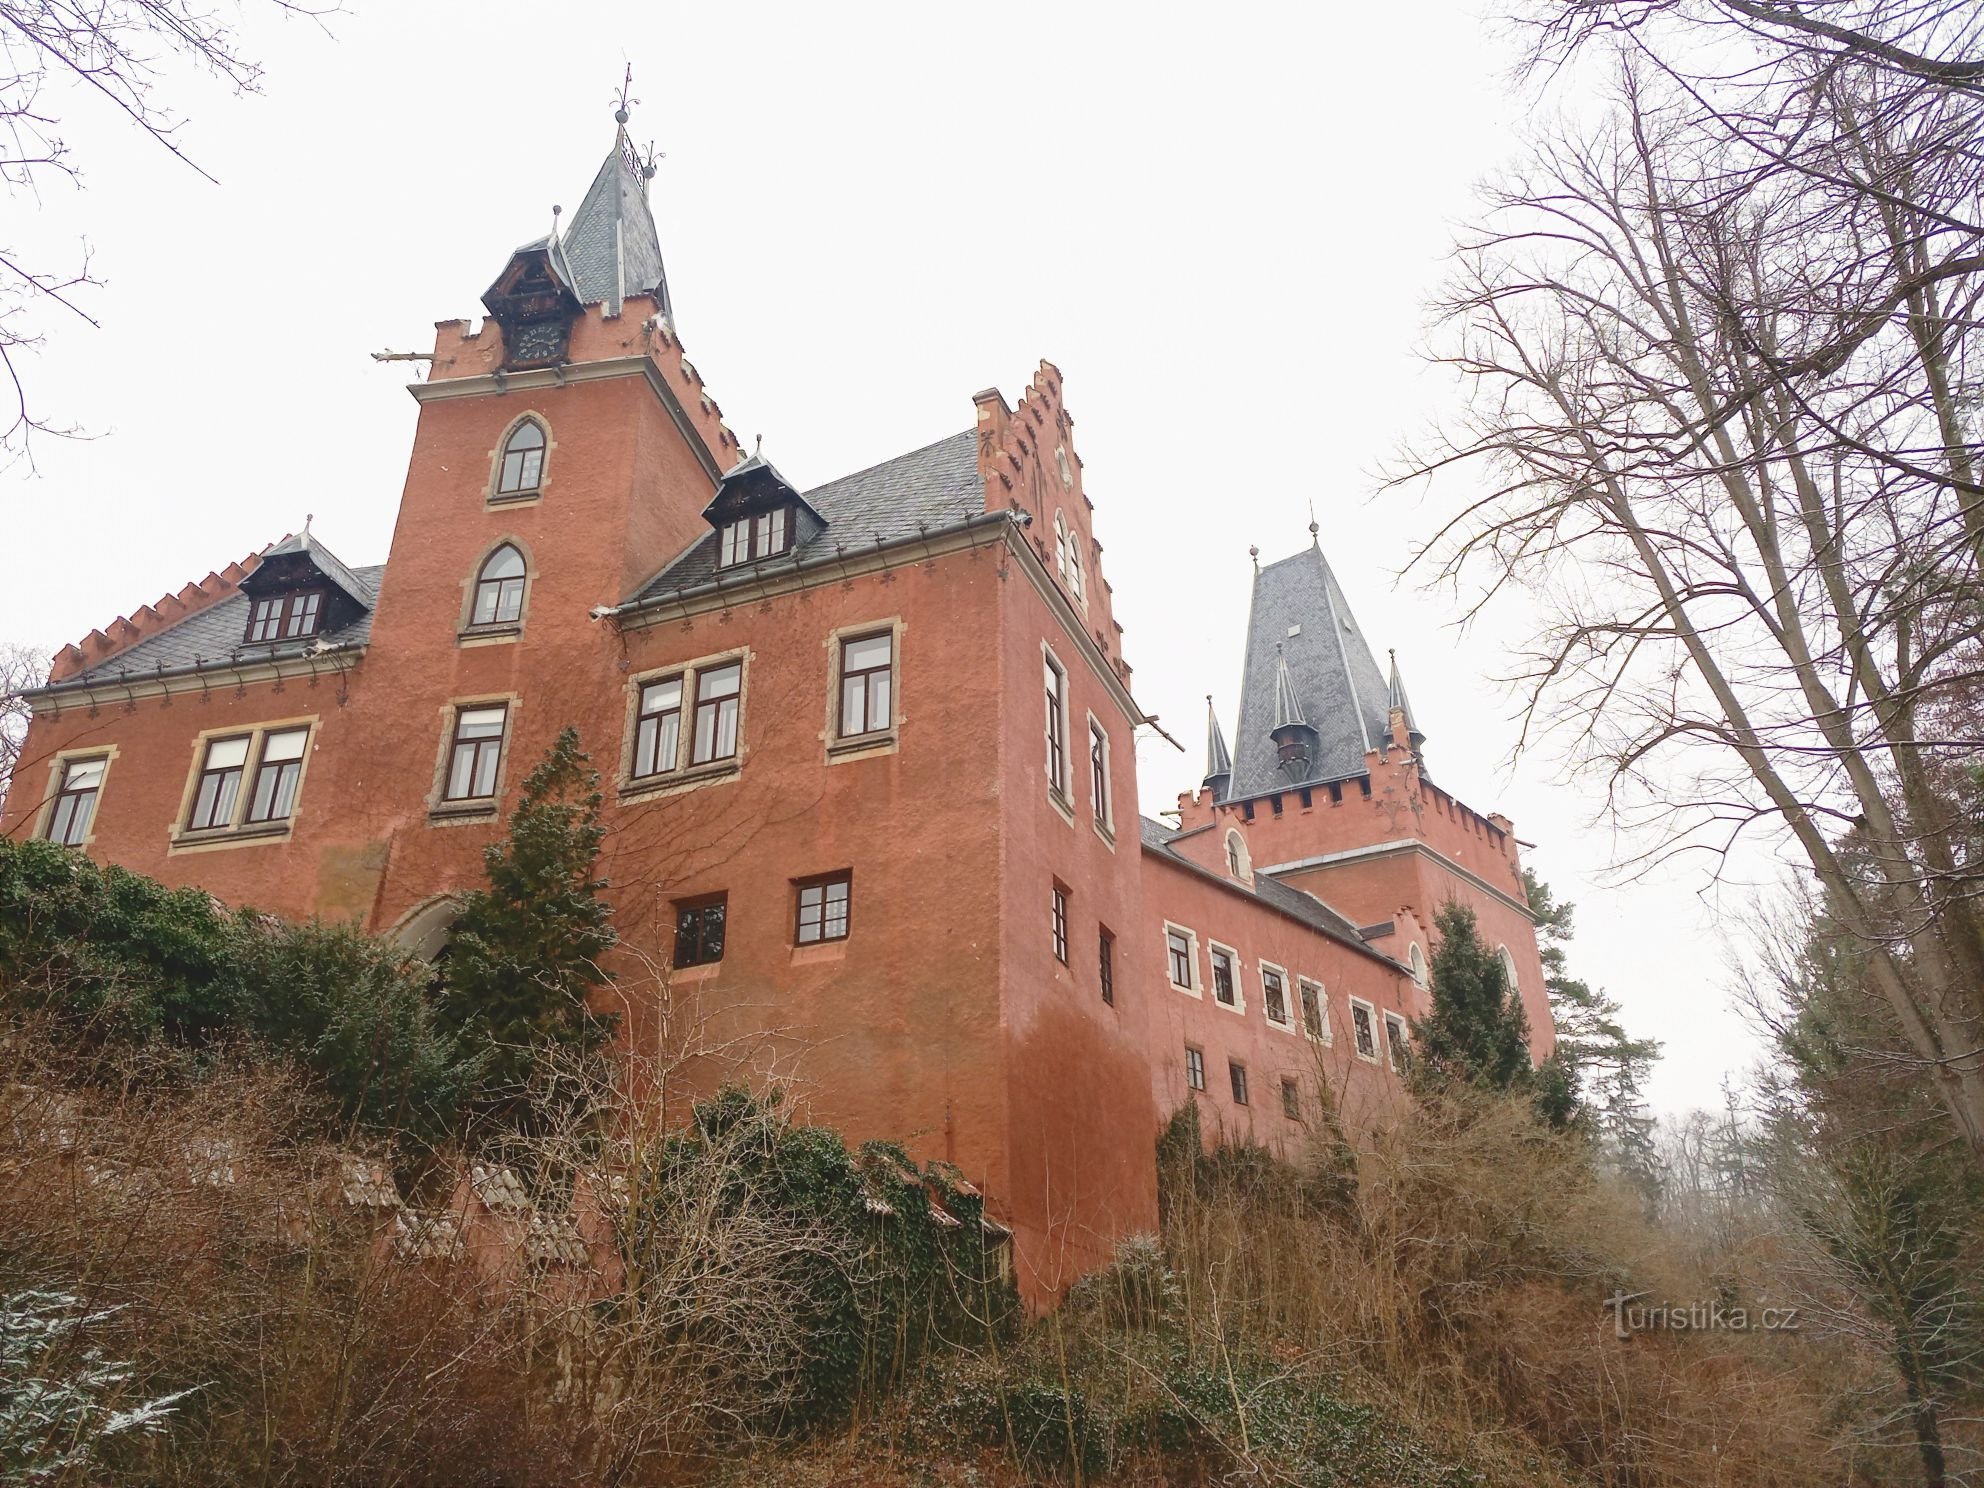 3. Το κάστρο Červený Hrádek ονομάστηκε ίσως από το κάλυμμα ή το χρώμα του σοβά